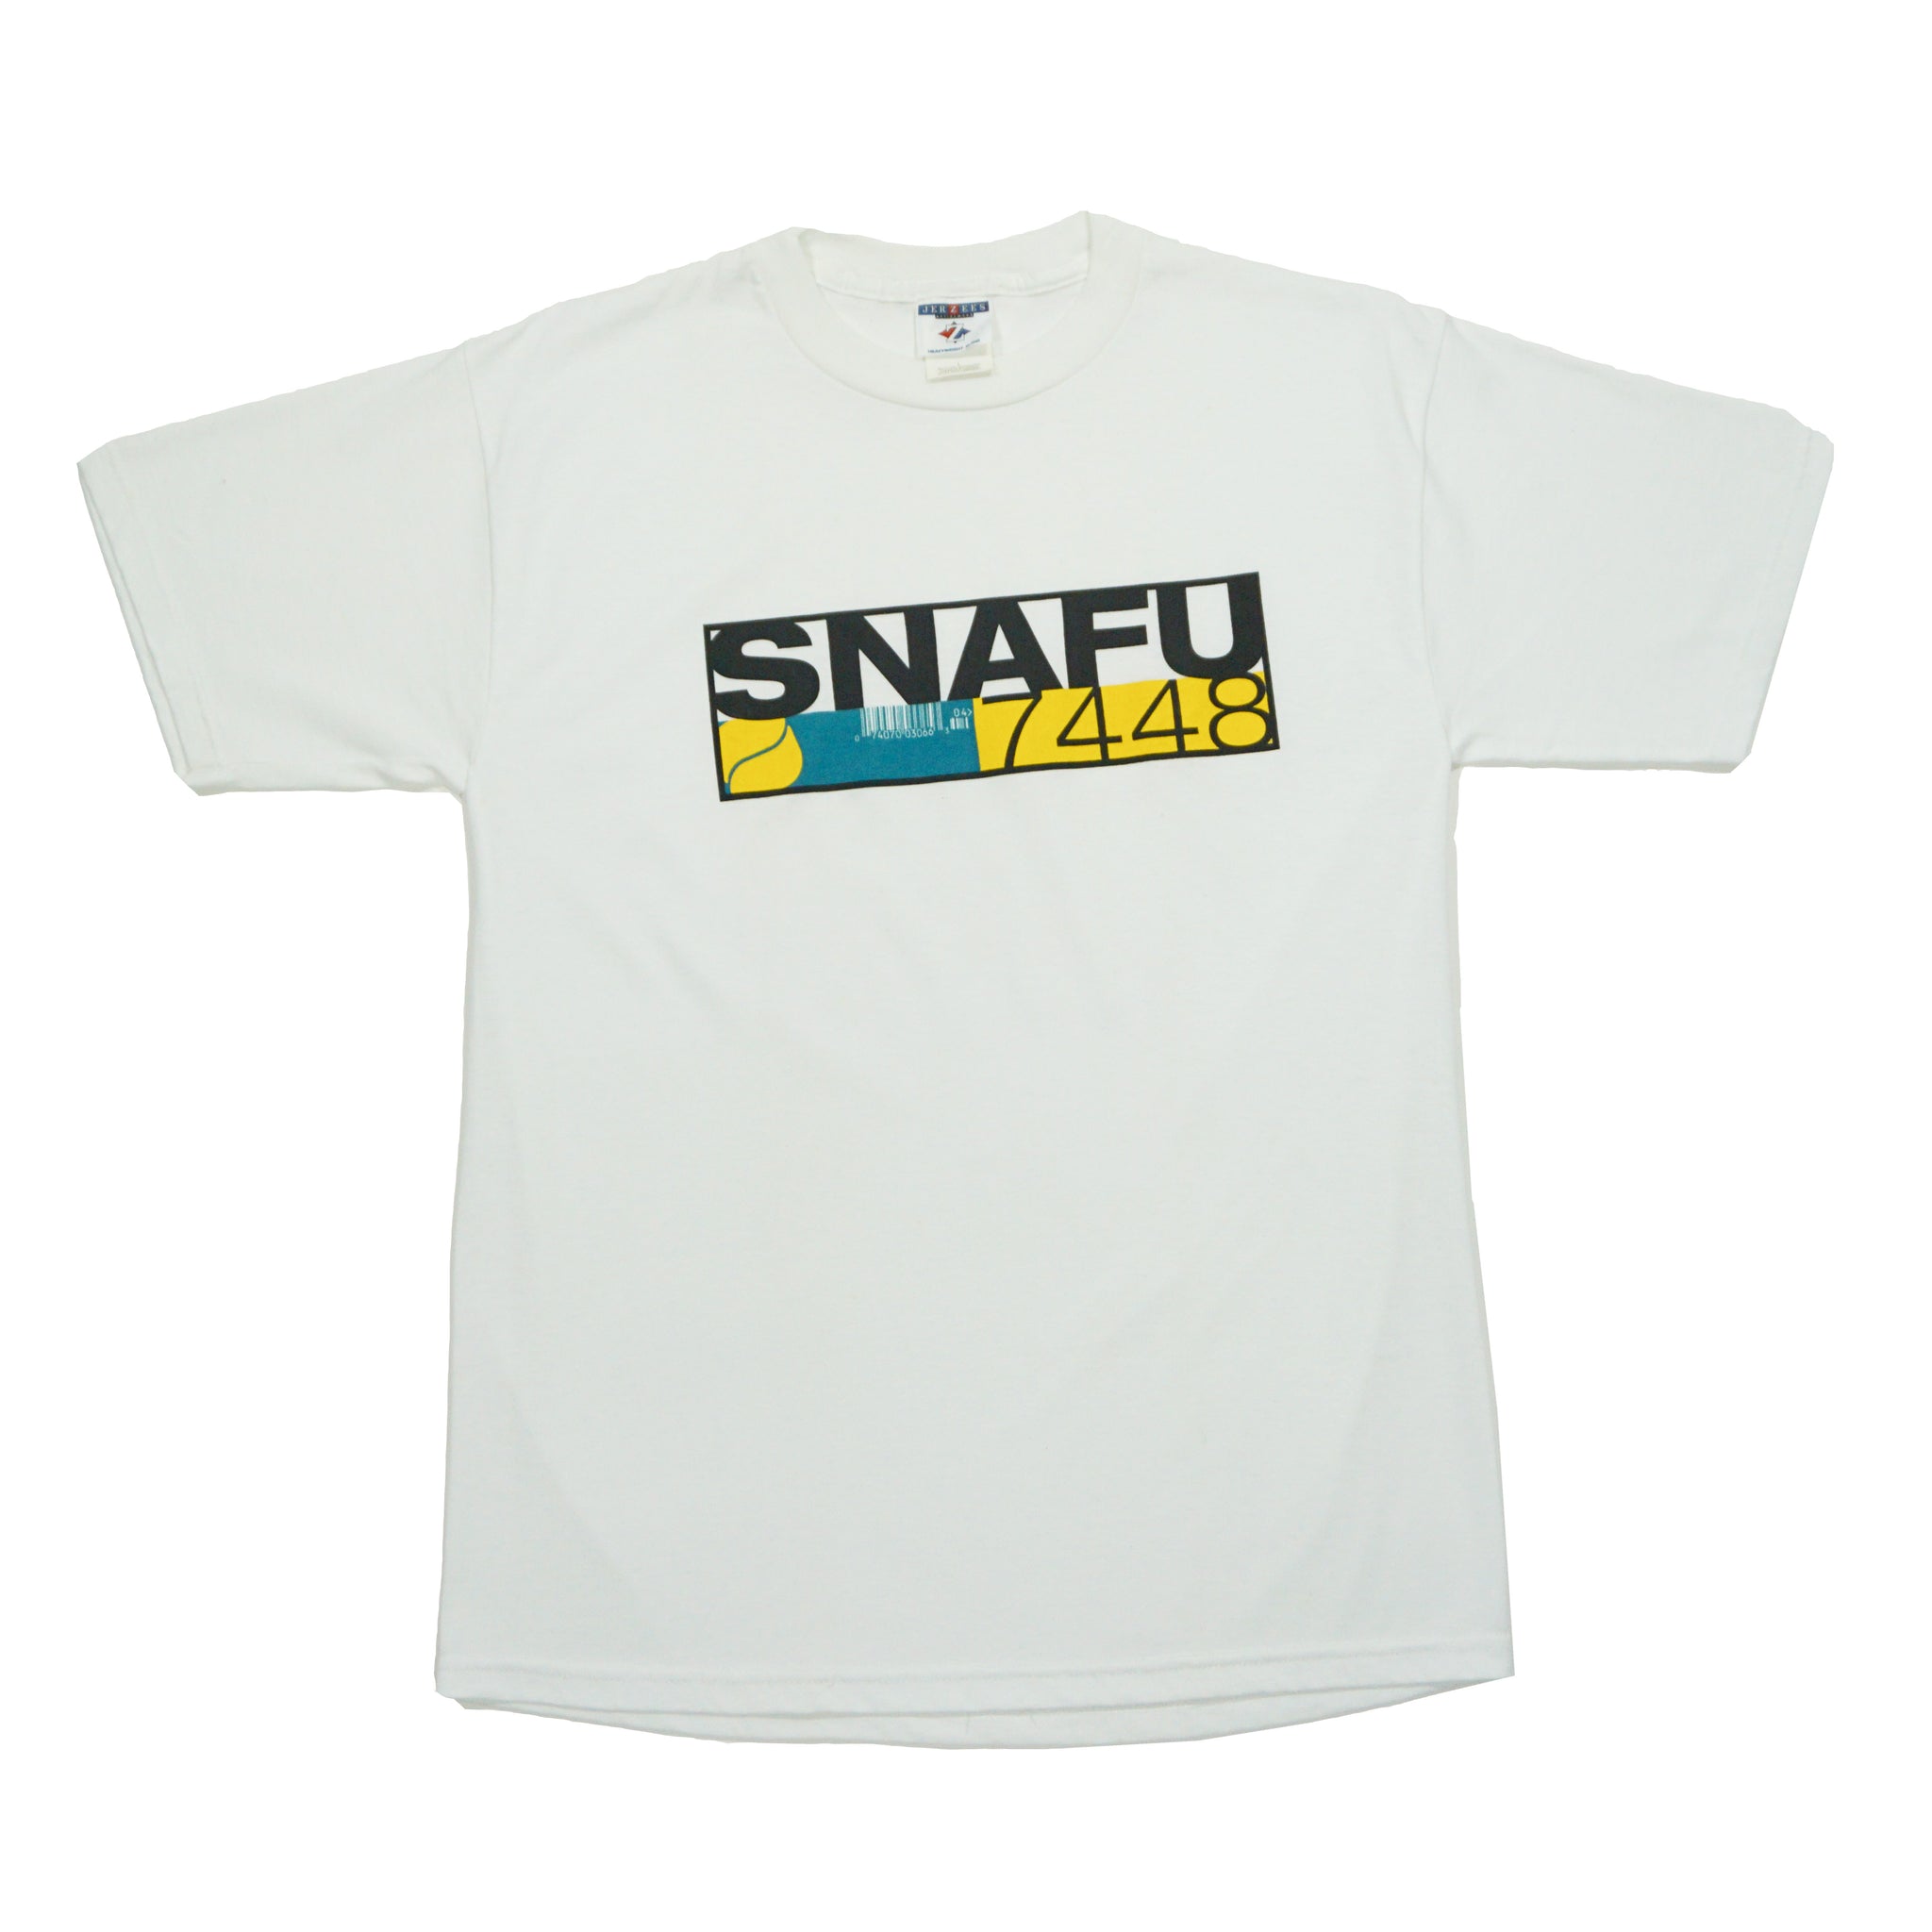 Snafu - 7448 Tee (L)